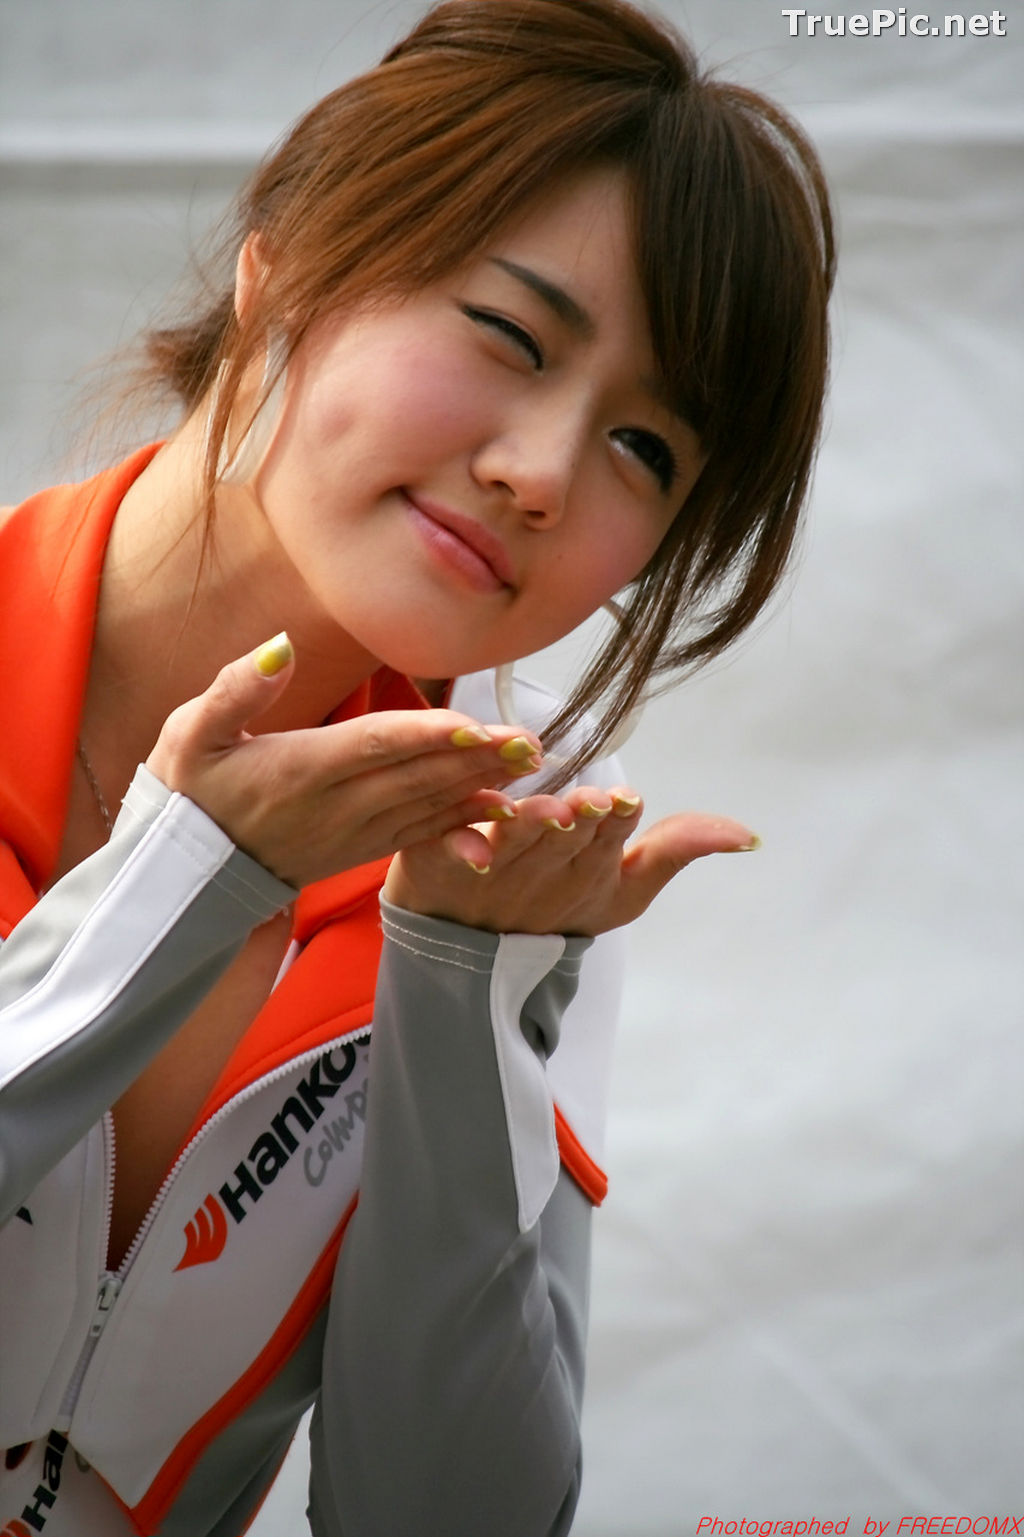 Image Best Beautiful Images Of Korean Racing Queen Han Ga Eun #3 - TruePic.net - Picture-84